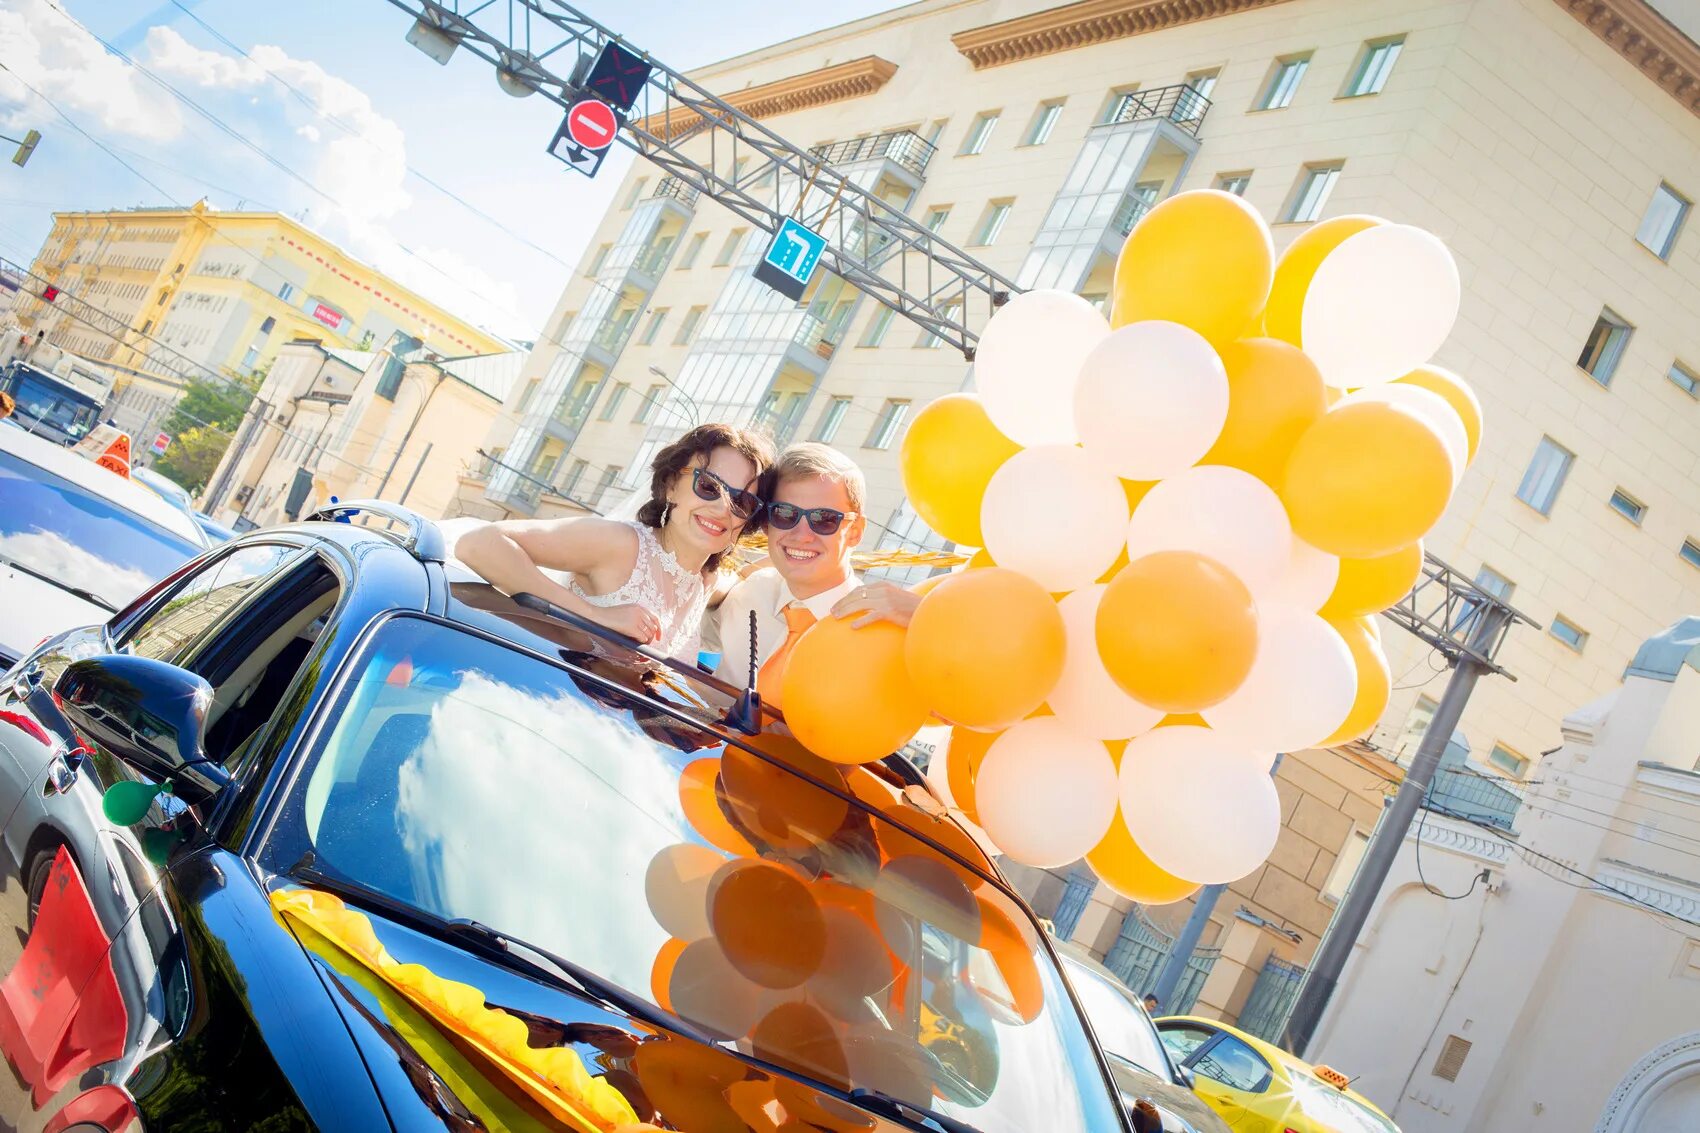 Доставка гелия спб. Гелиевые шары реклама на авто. Фотосессия шары и машина. Доставщик шаров. Гелиевые шары с людьми.